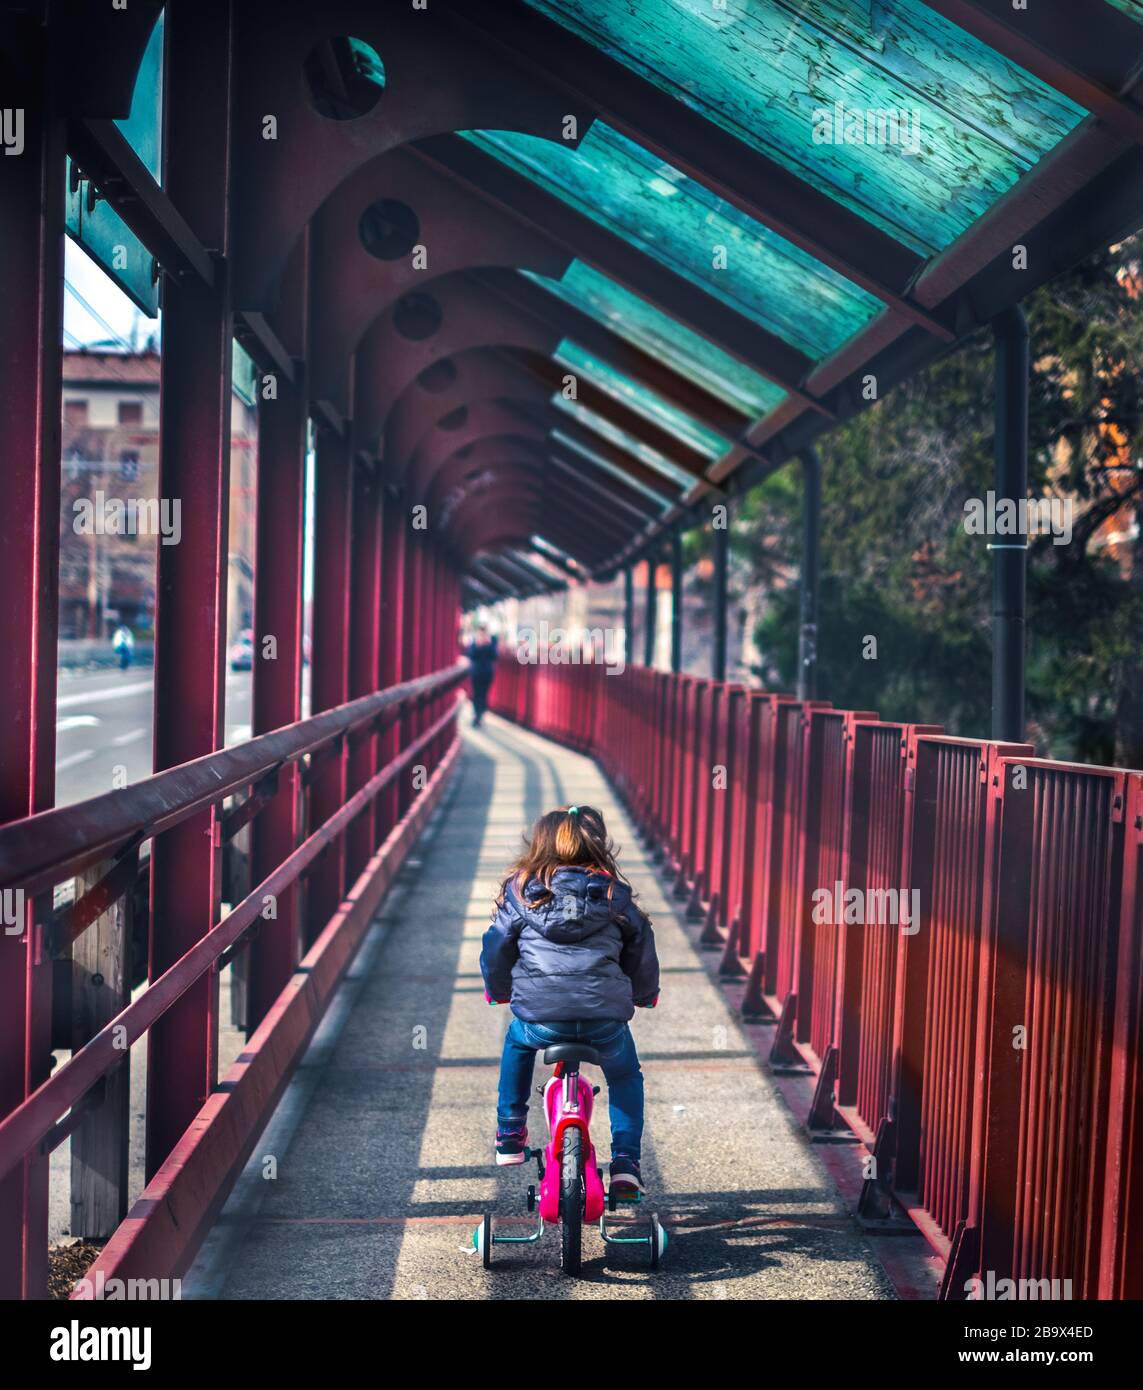 le vélo de bébé vu de l'arrière-plan du pont rouge déserté sans personne Banque D'Images